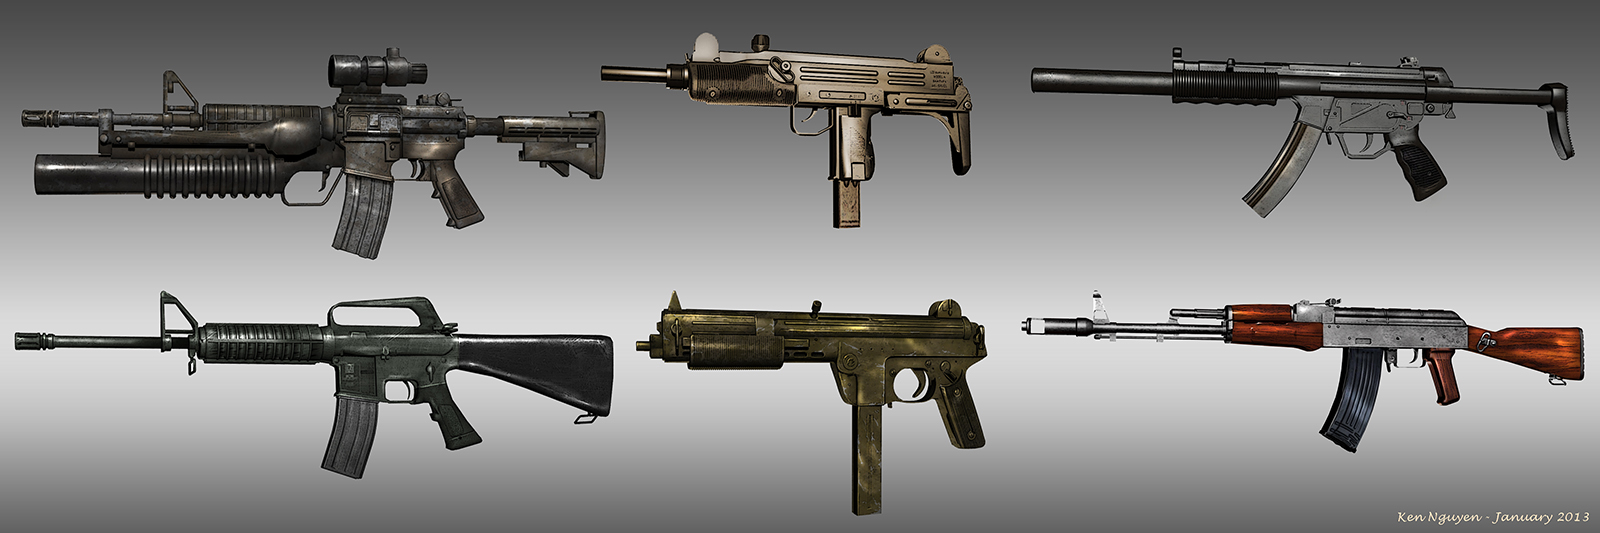 Gun_concepts_01.jpg